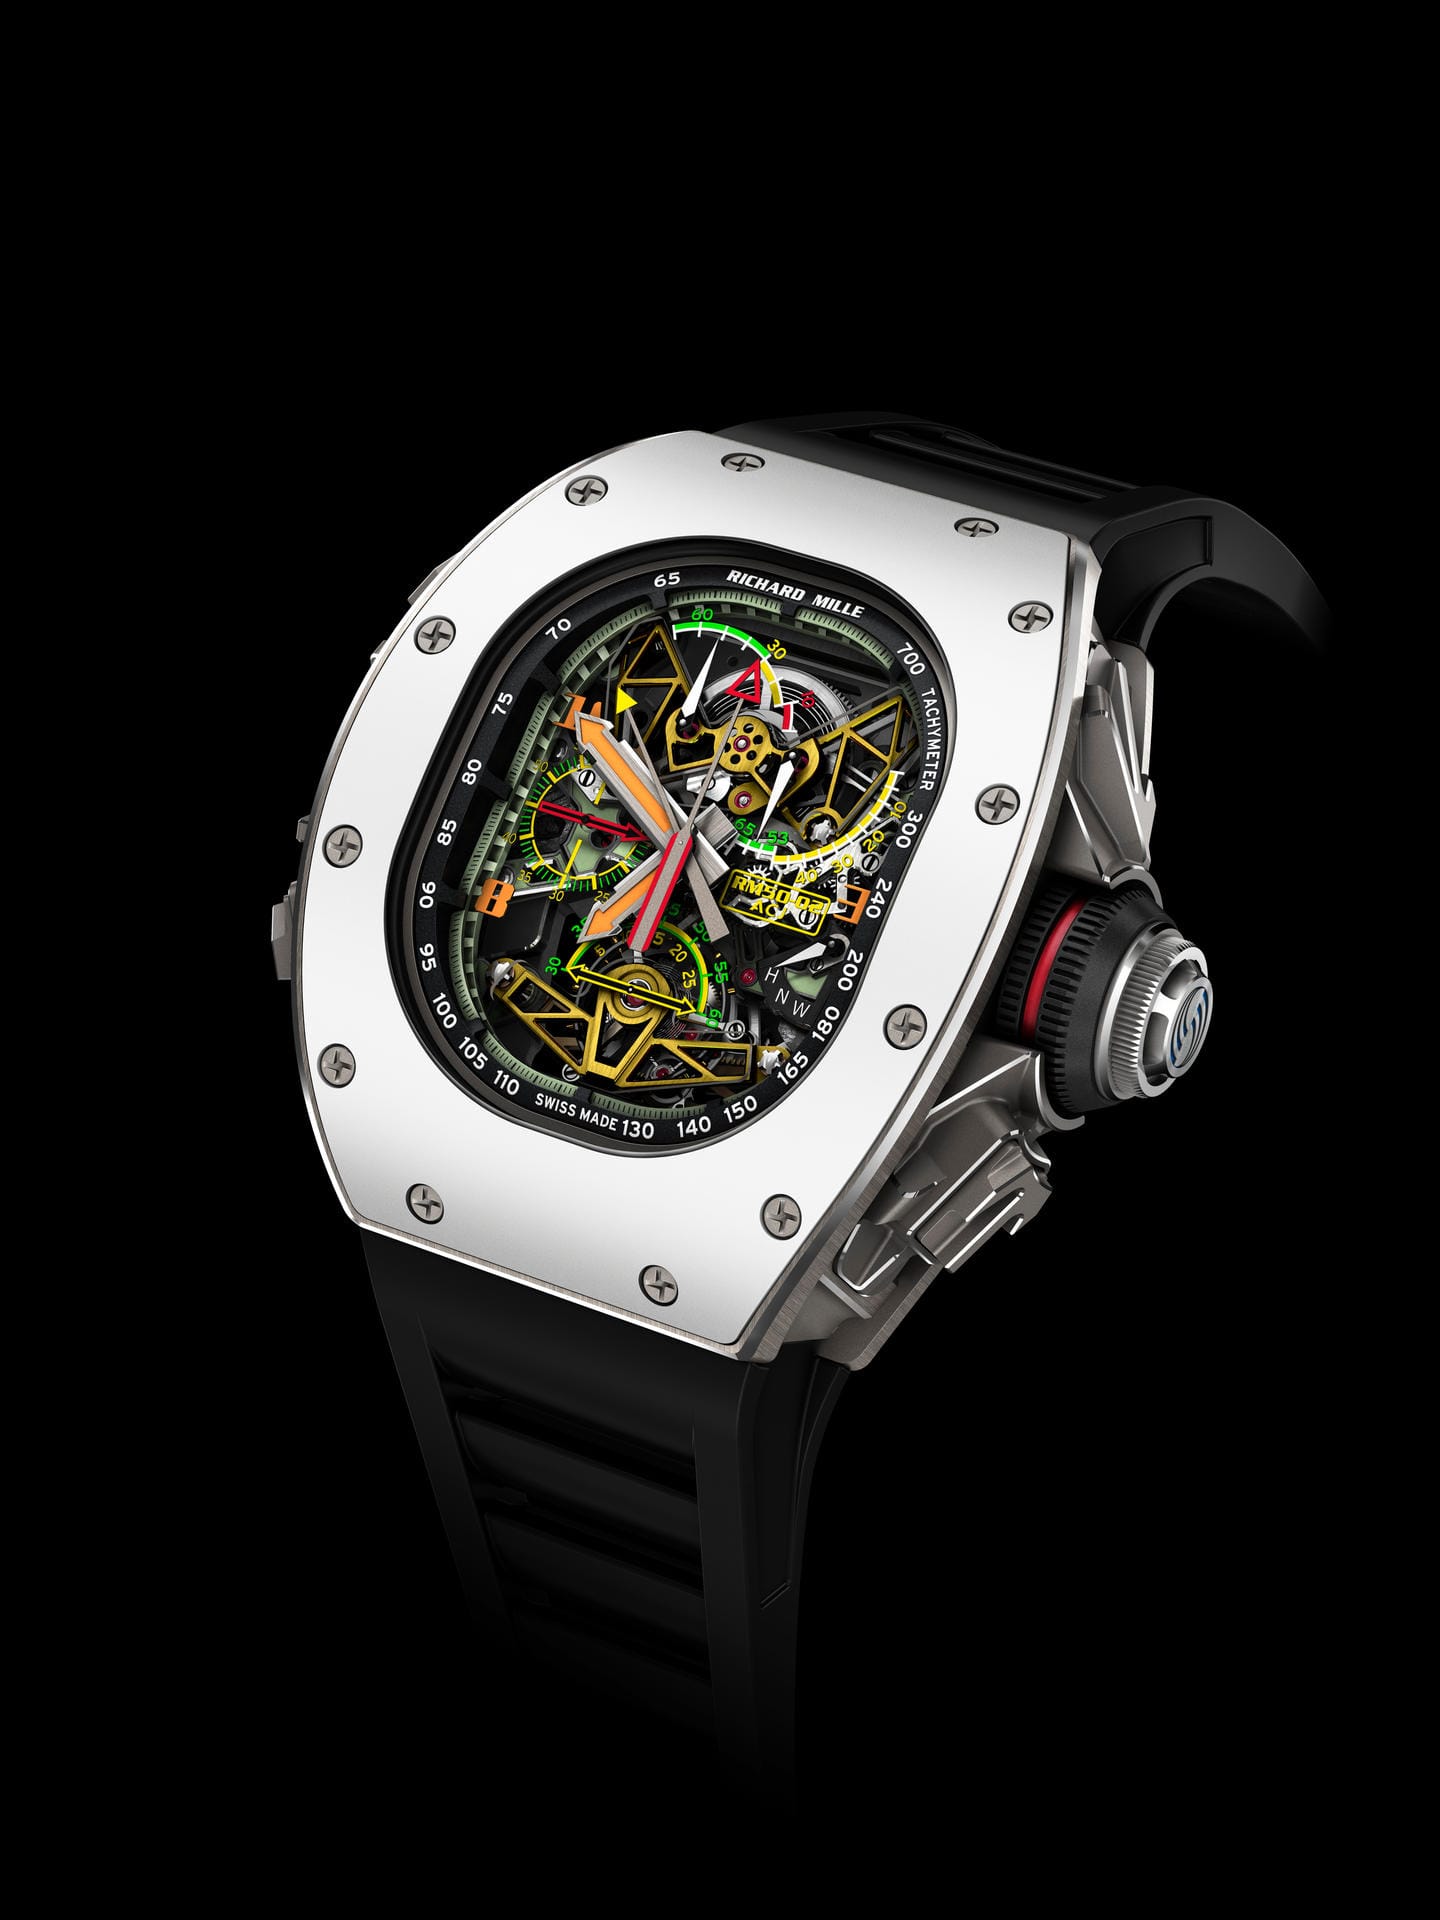 Die wohl teuerste Uhr der Messe ist die RM 50-02 ACJ Tourbillon Split Seconds Chronograph von Richard Mille, welche in Zusammenarbeit mit Airbus Corporate Jets entstand.